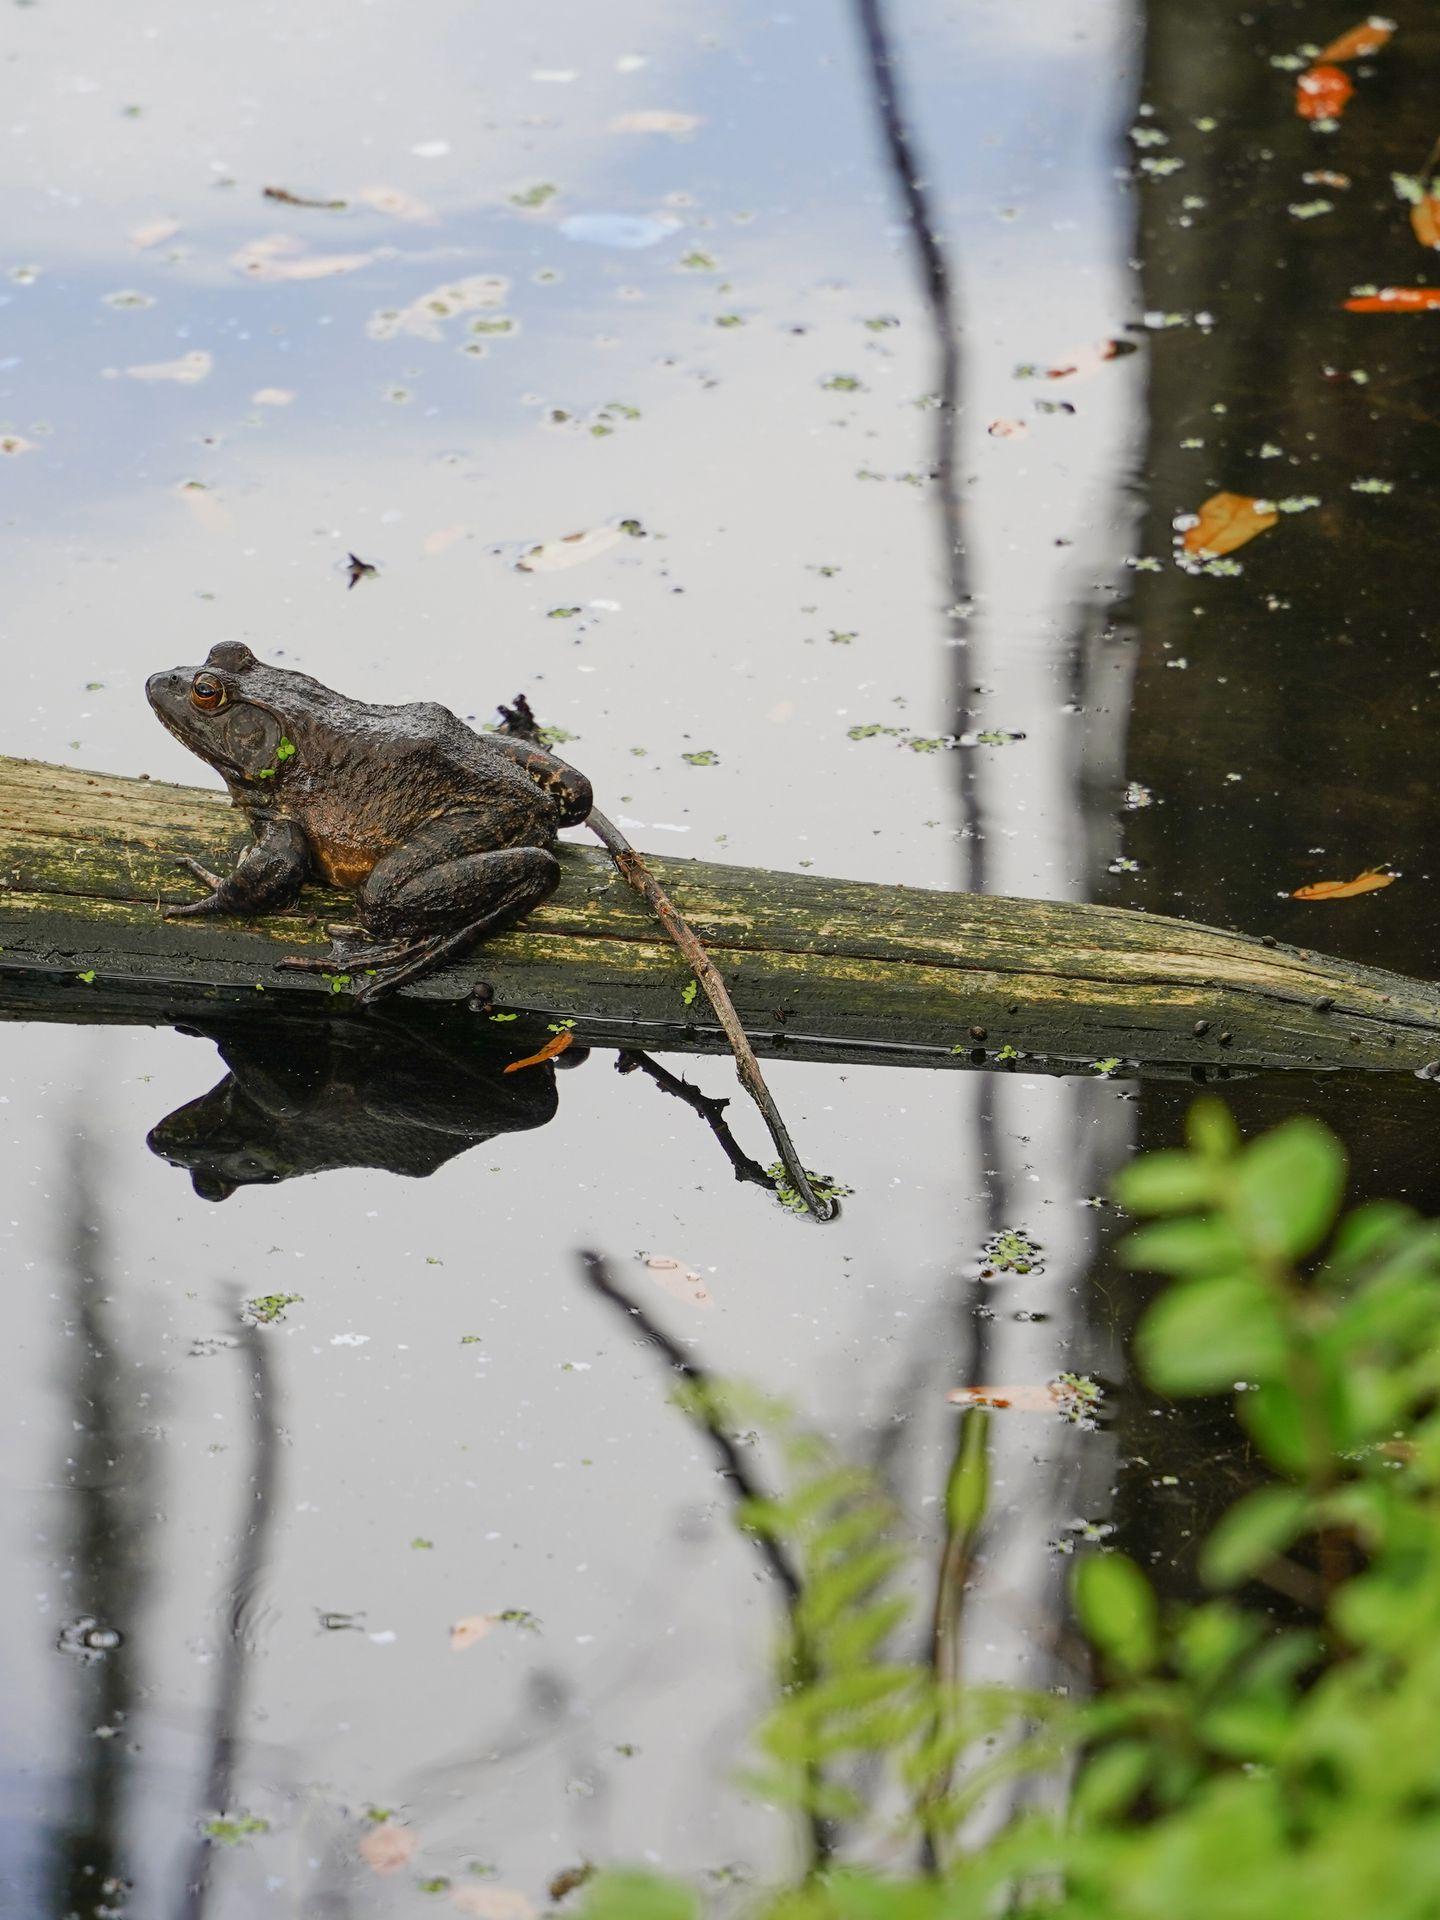 A large frog on a log at Shangri La Botanical Gardens